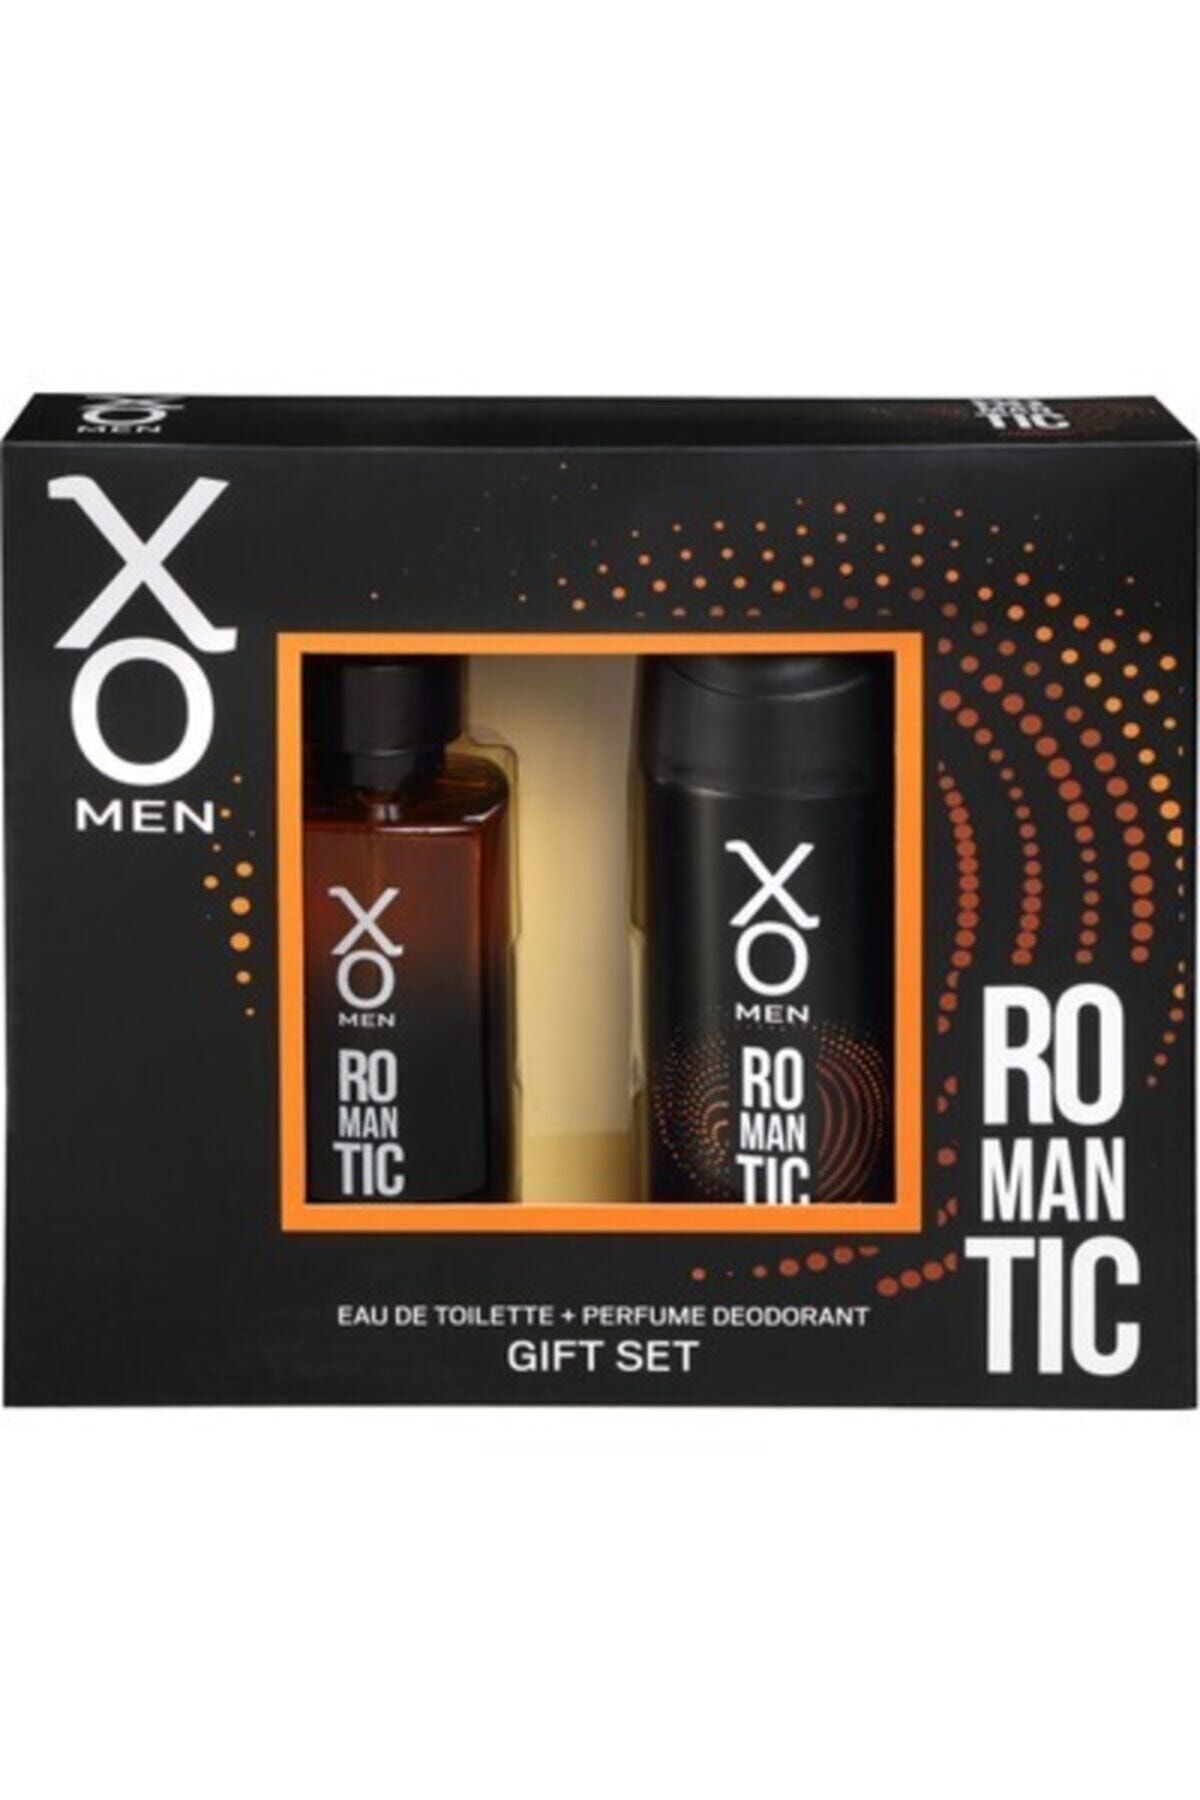 Xo Orıjınal Romantıc Erkek Parfüm Seti 100 Ml Edt + 125 Ml Deodorant Ikili Set